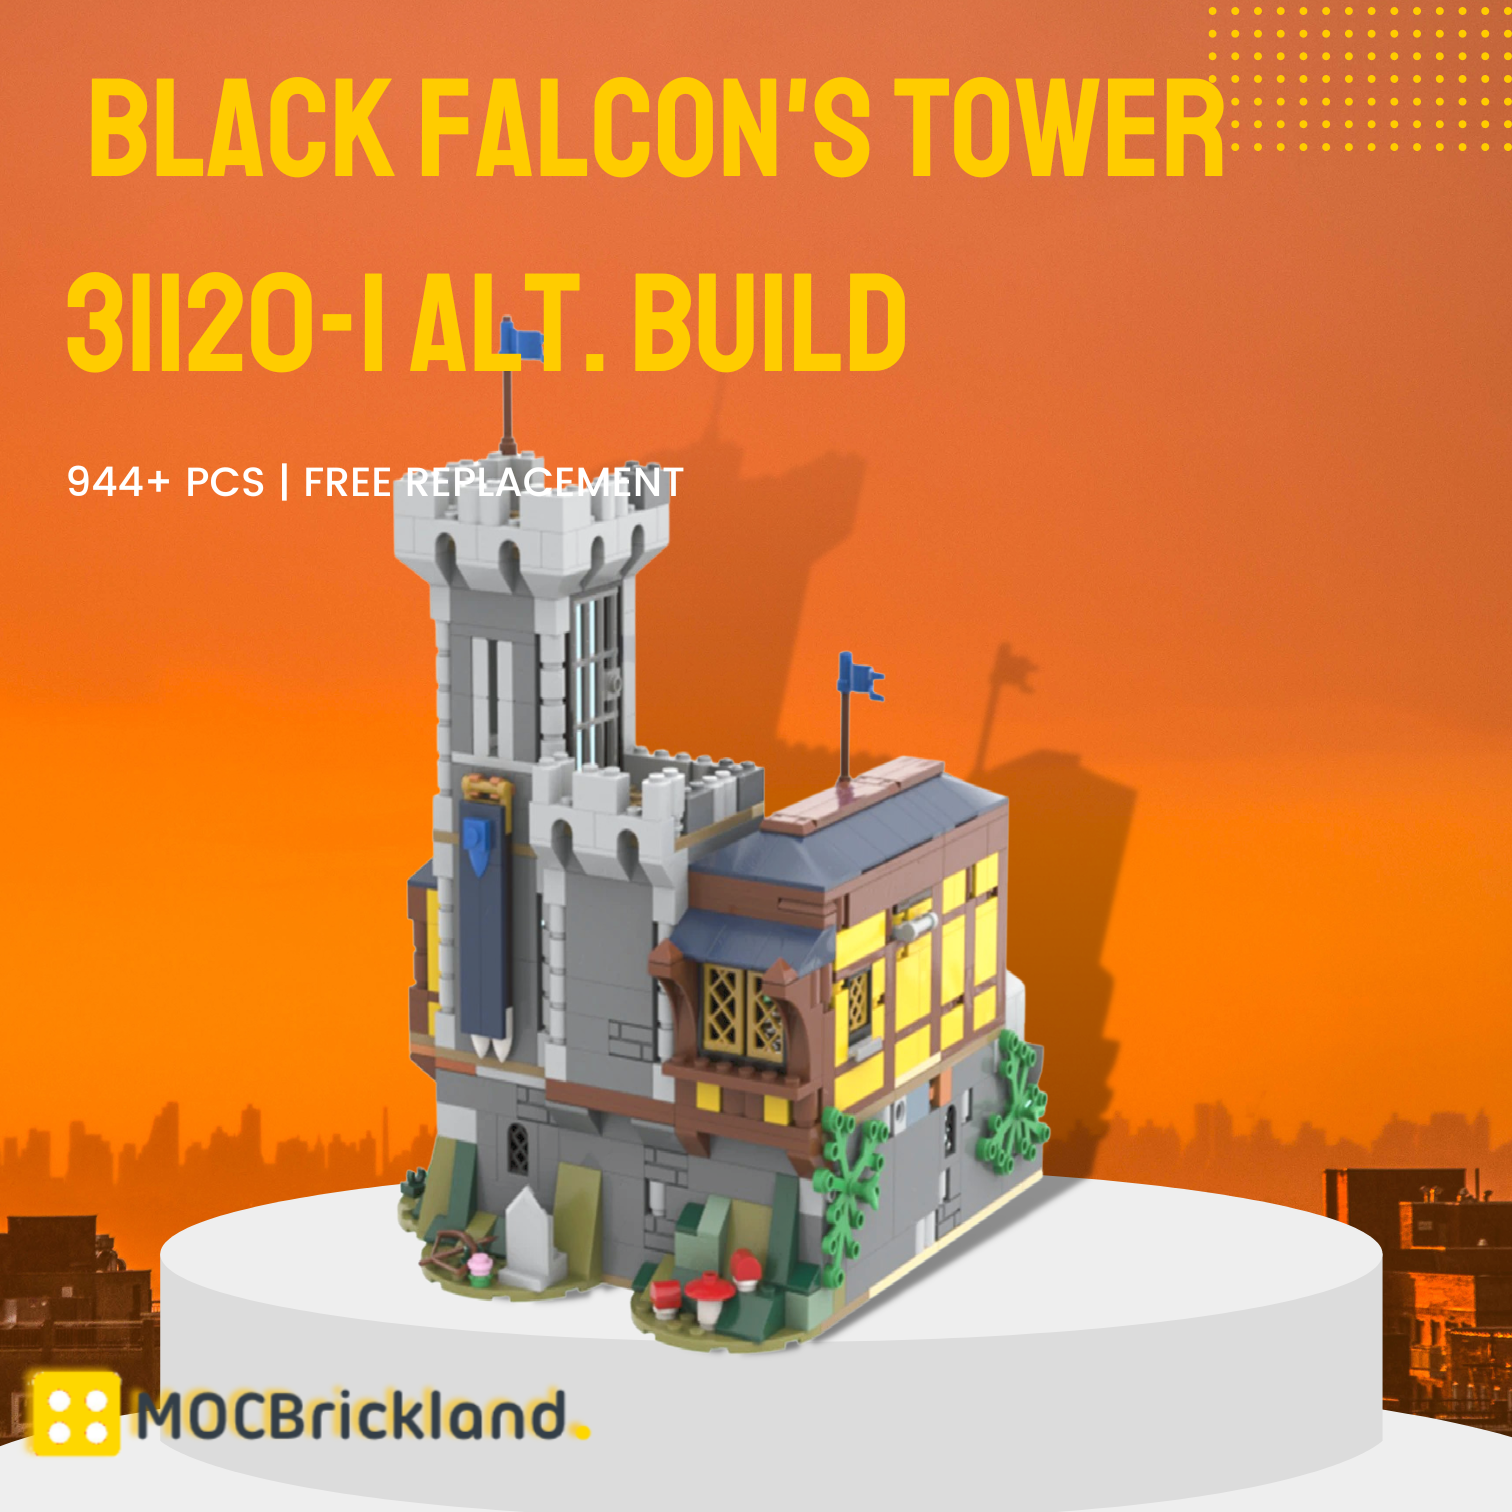 Black Falcon's Tower 31120 1 Alt. Build Moc 115655